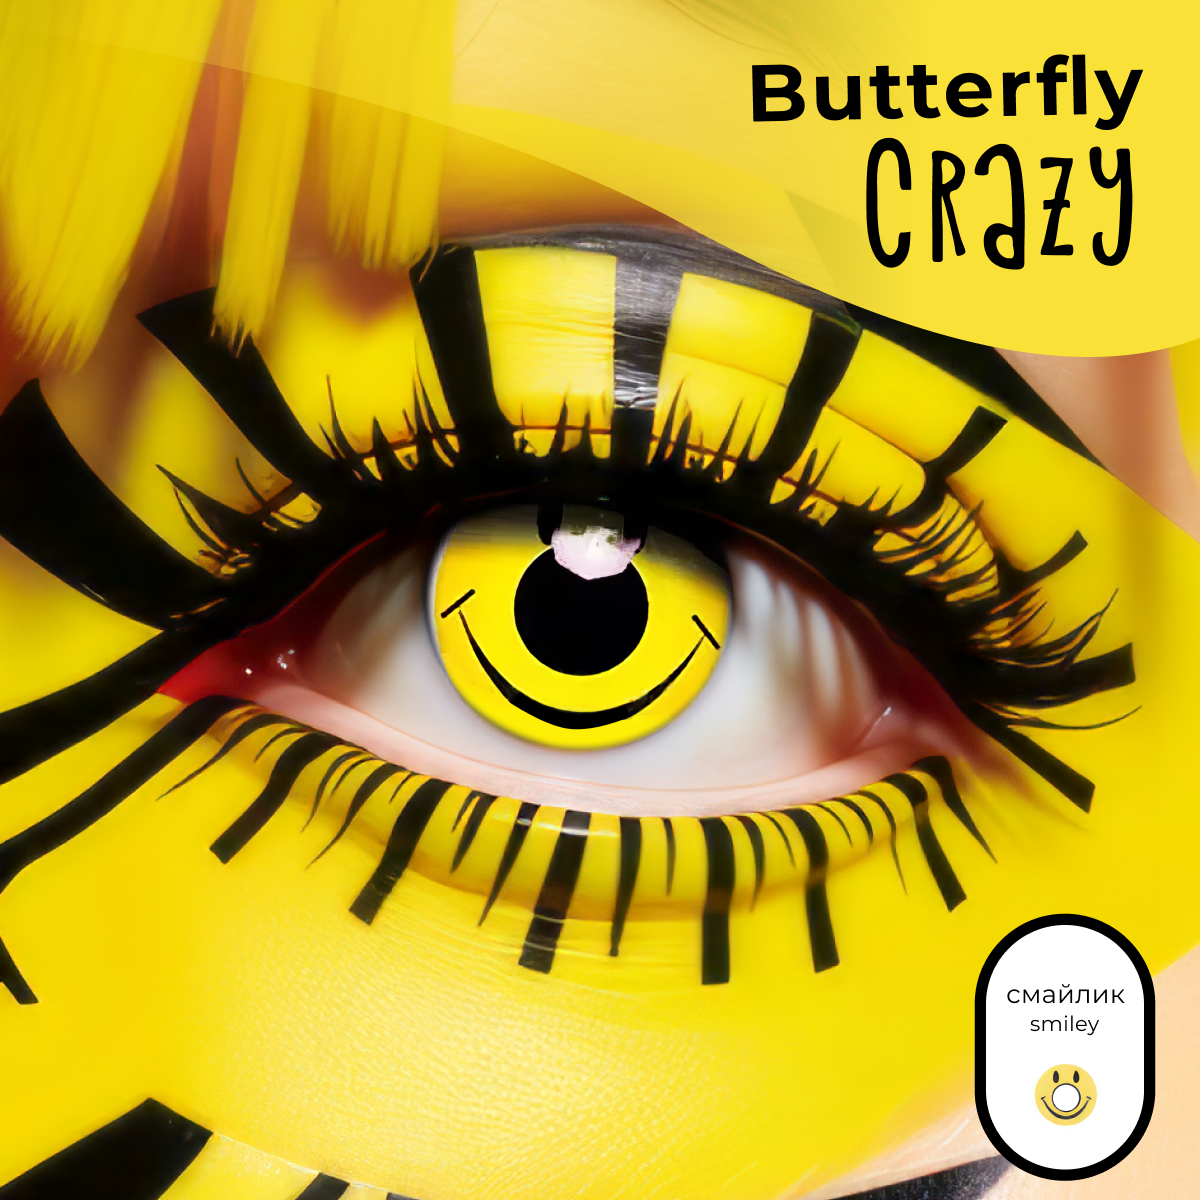 Цветные контактные линзы Офтальмикс Butterfly Crazy 0.00 R 8.6 Смайлик